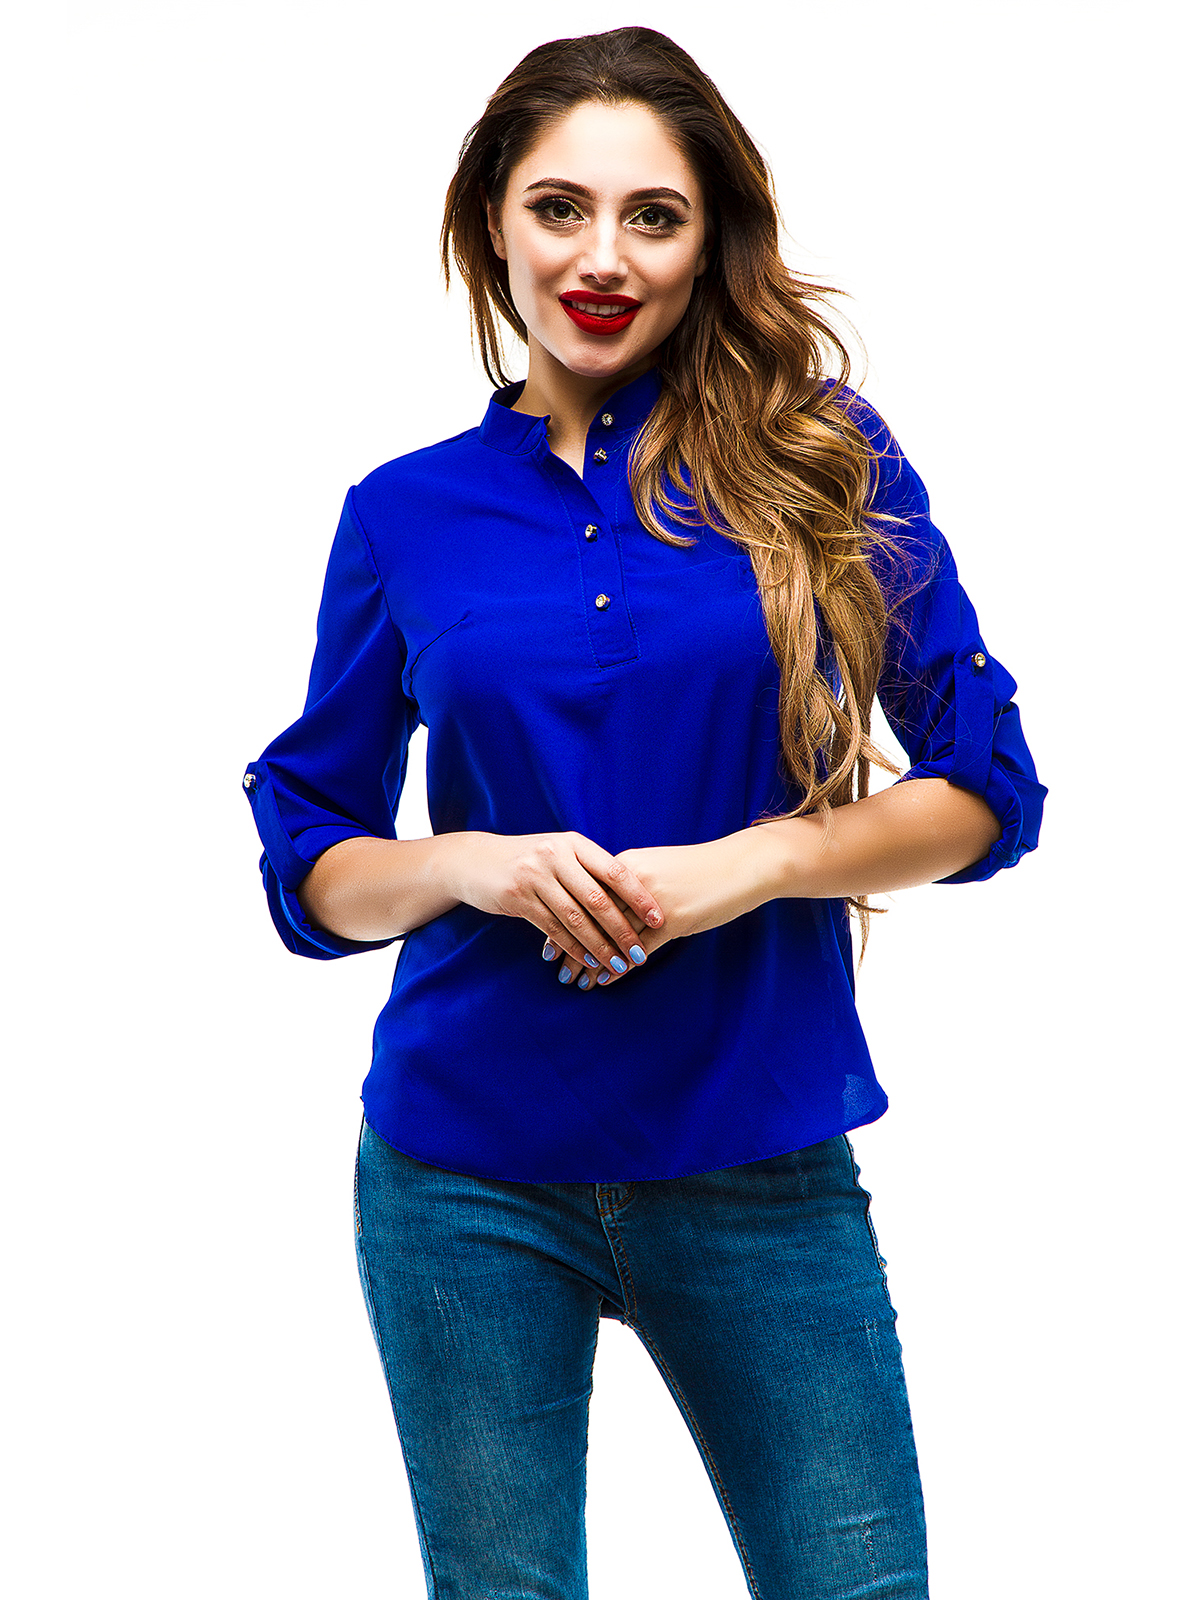 Блузка женская синяя. Синяя рубашка женская. Синяя блузка. Блузка синяя женская. Синяя кофточка.